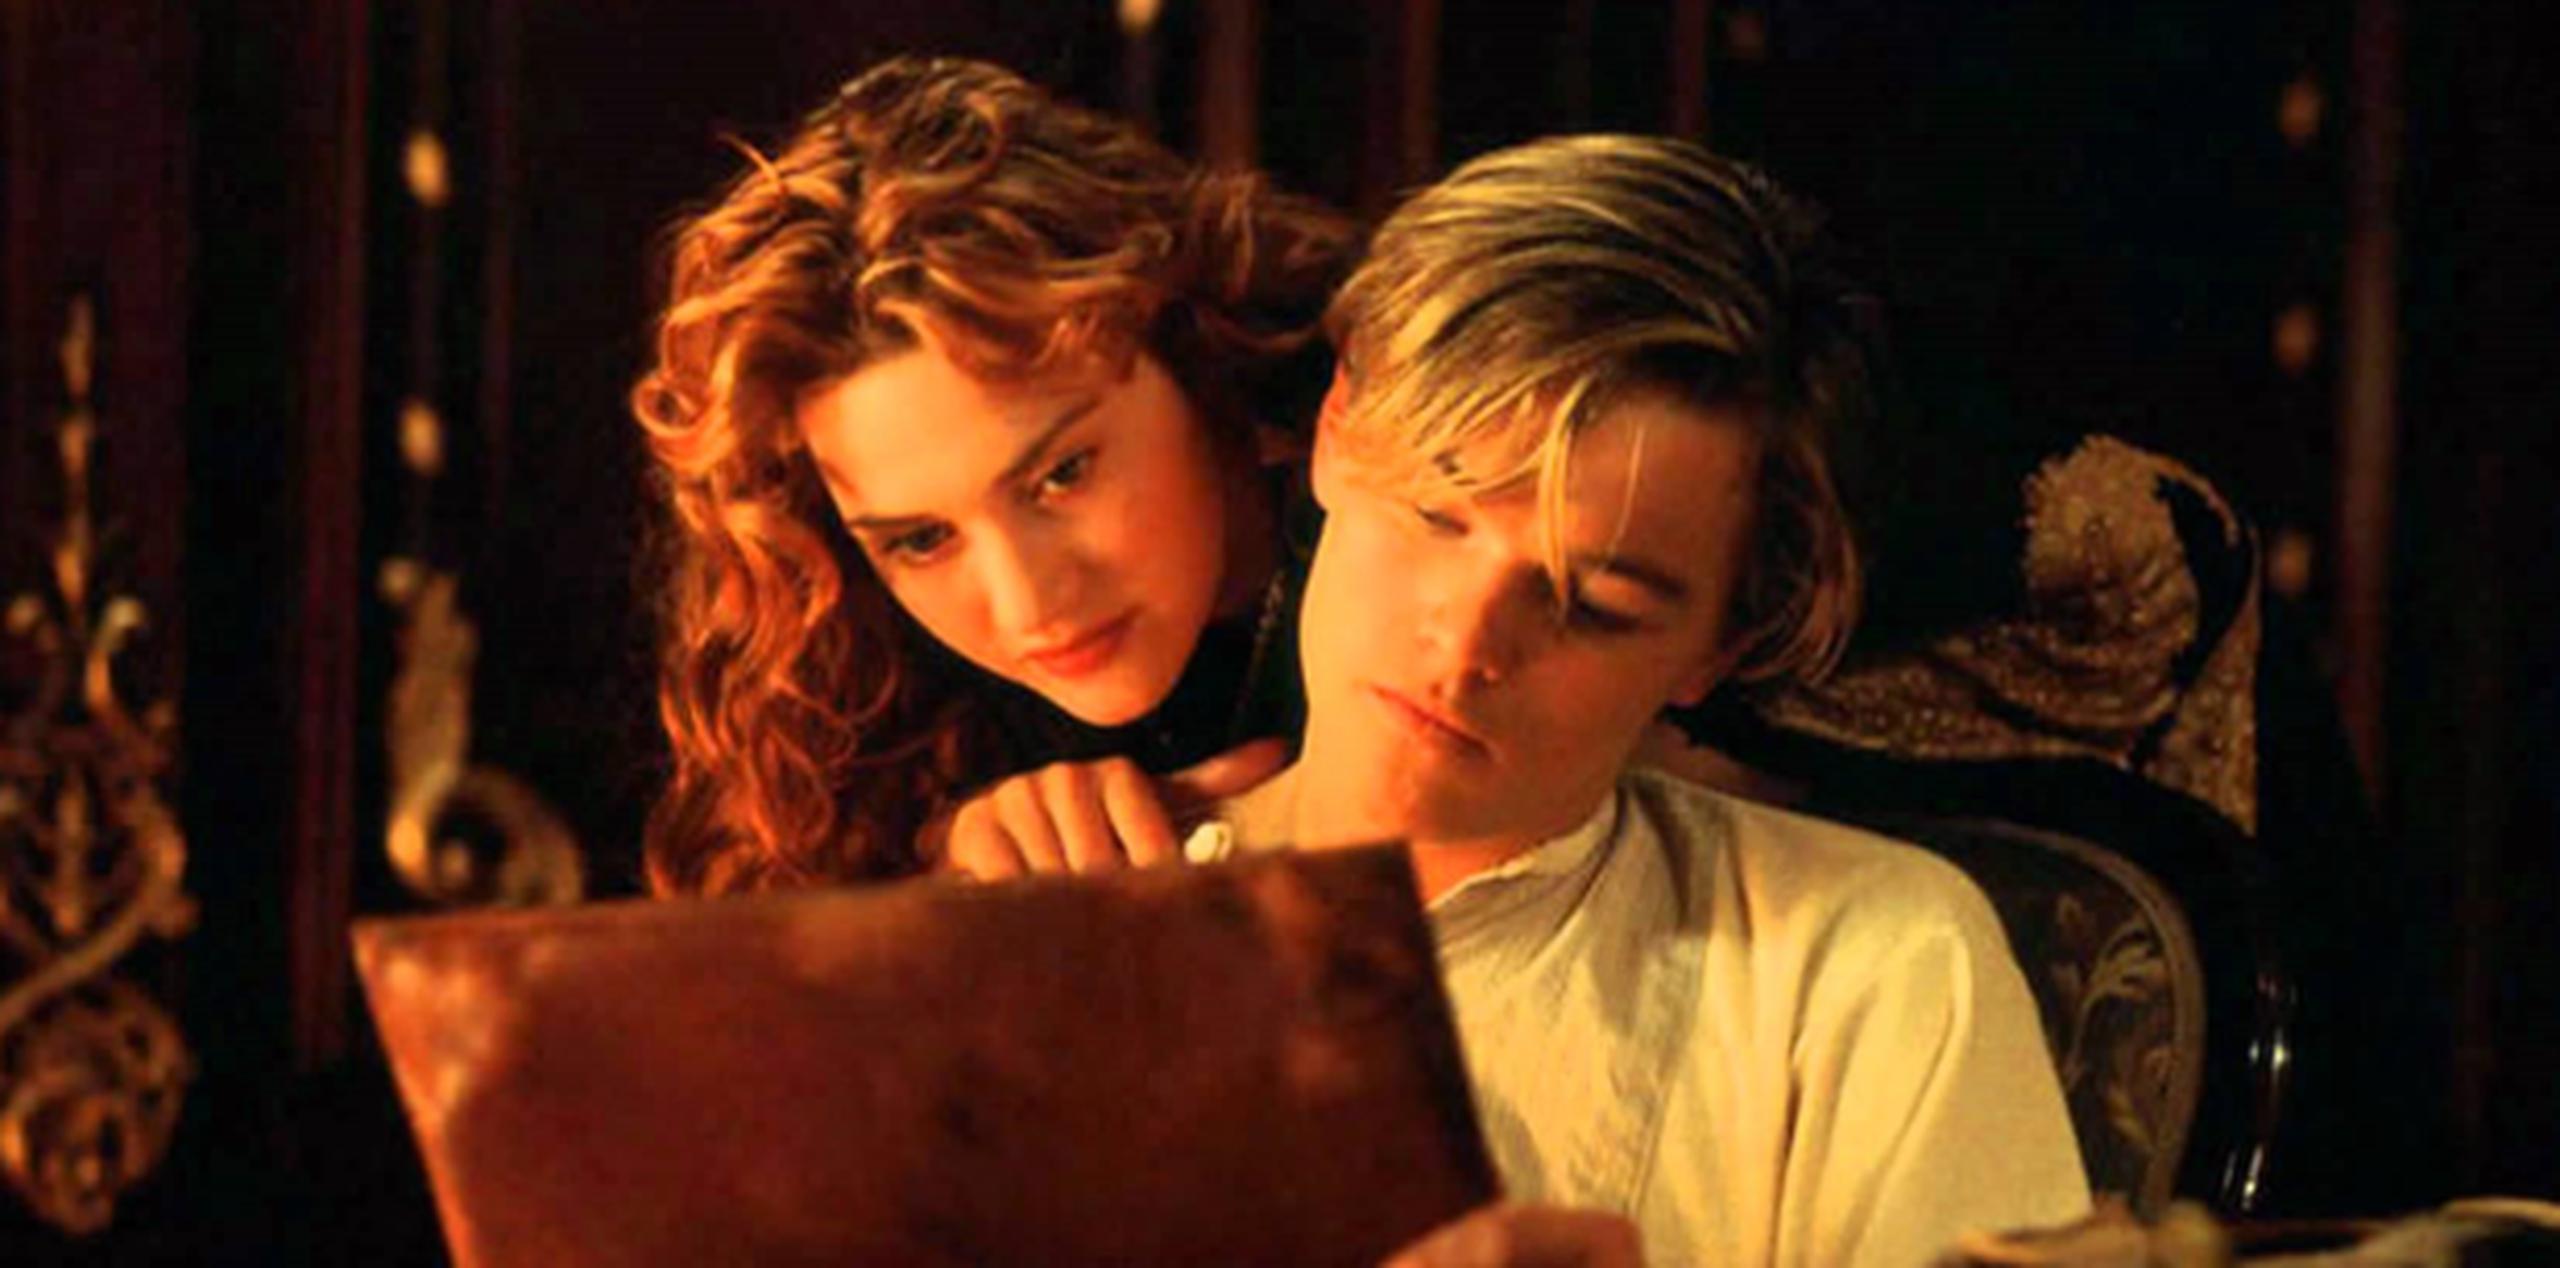 "Titanic" recaudó cerca de 2,000 millones de dólares en taquilla y ganó 11 premios Oscar incluyendo Mejor película y Mejor director. (Paramount Pictures / 20th Century Fox)